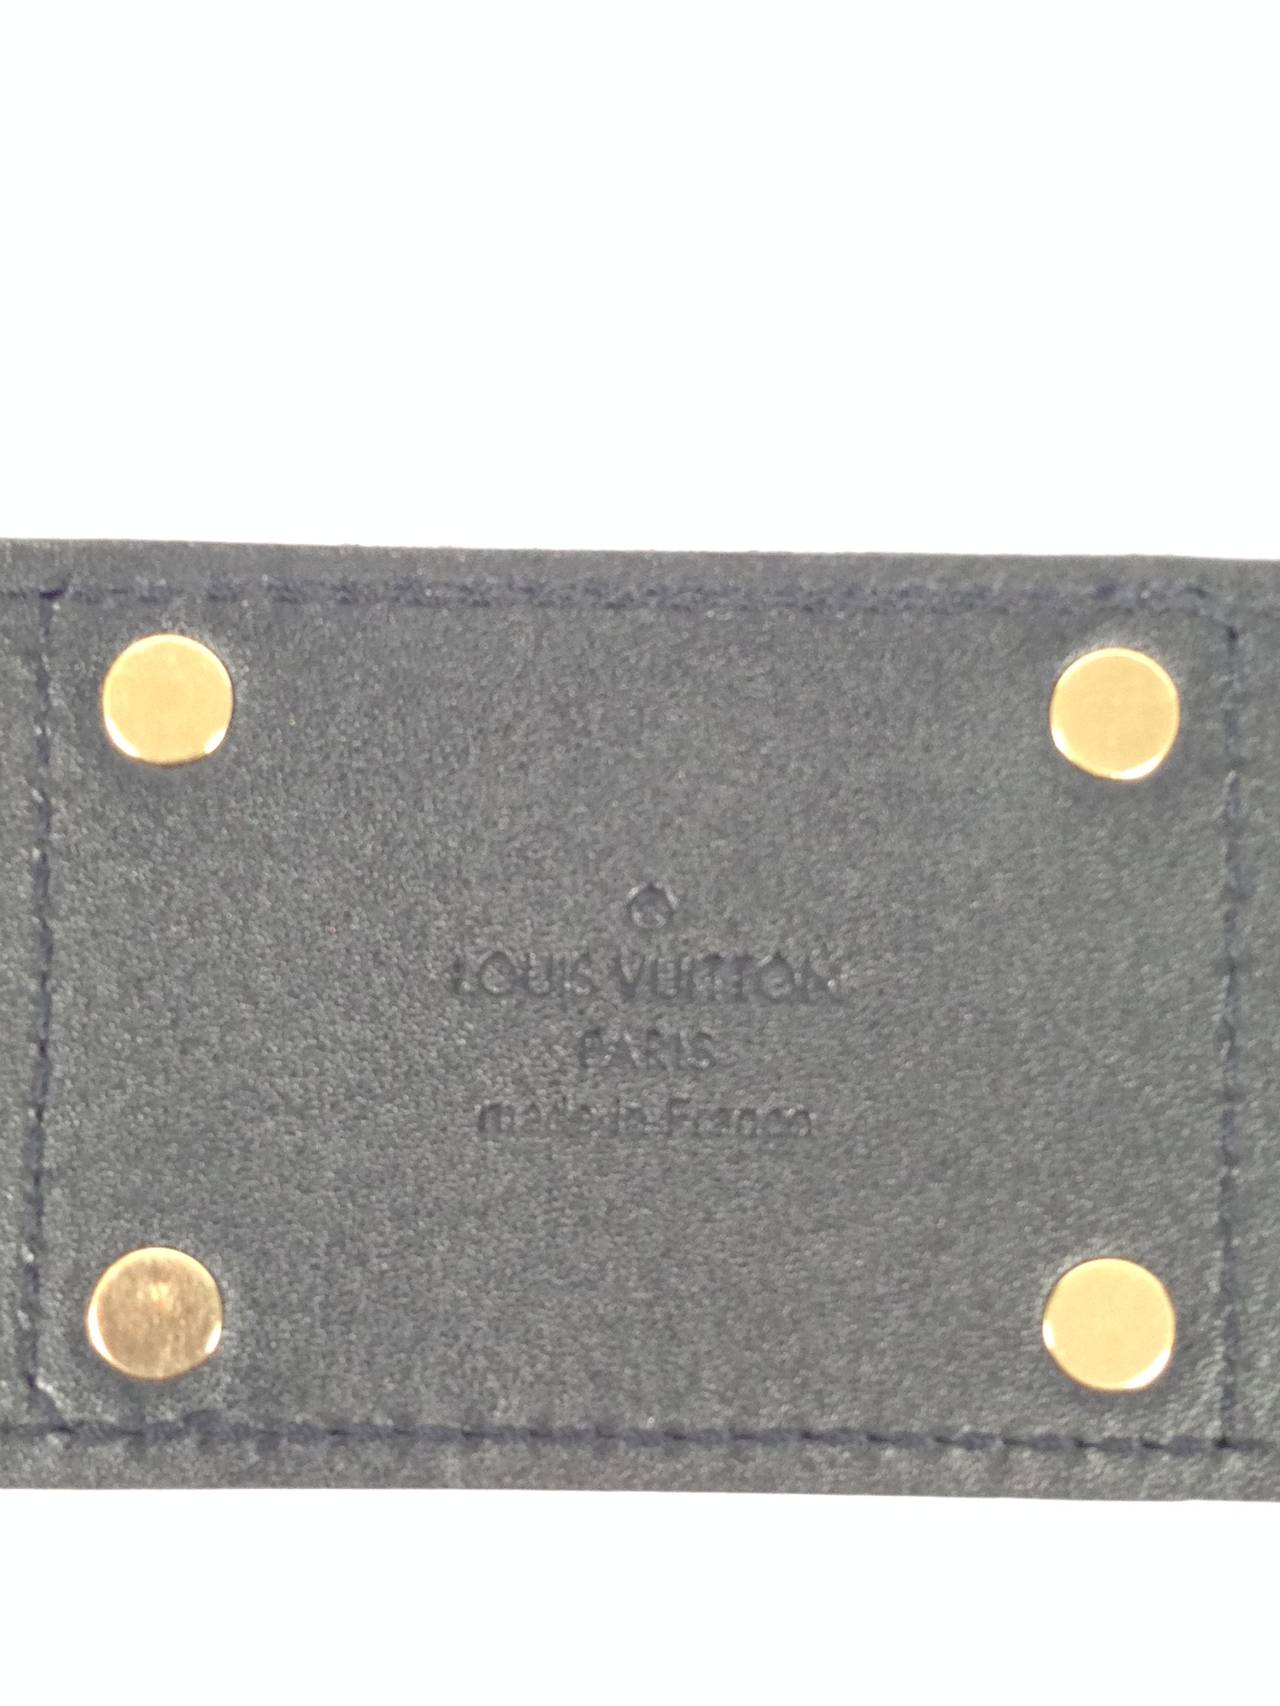 Louis Vuitton Black Patent Leather Belt For Sale 1